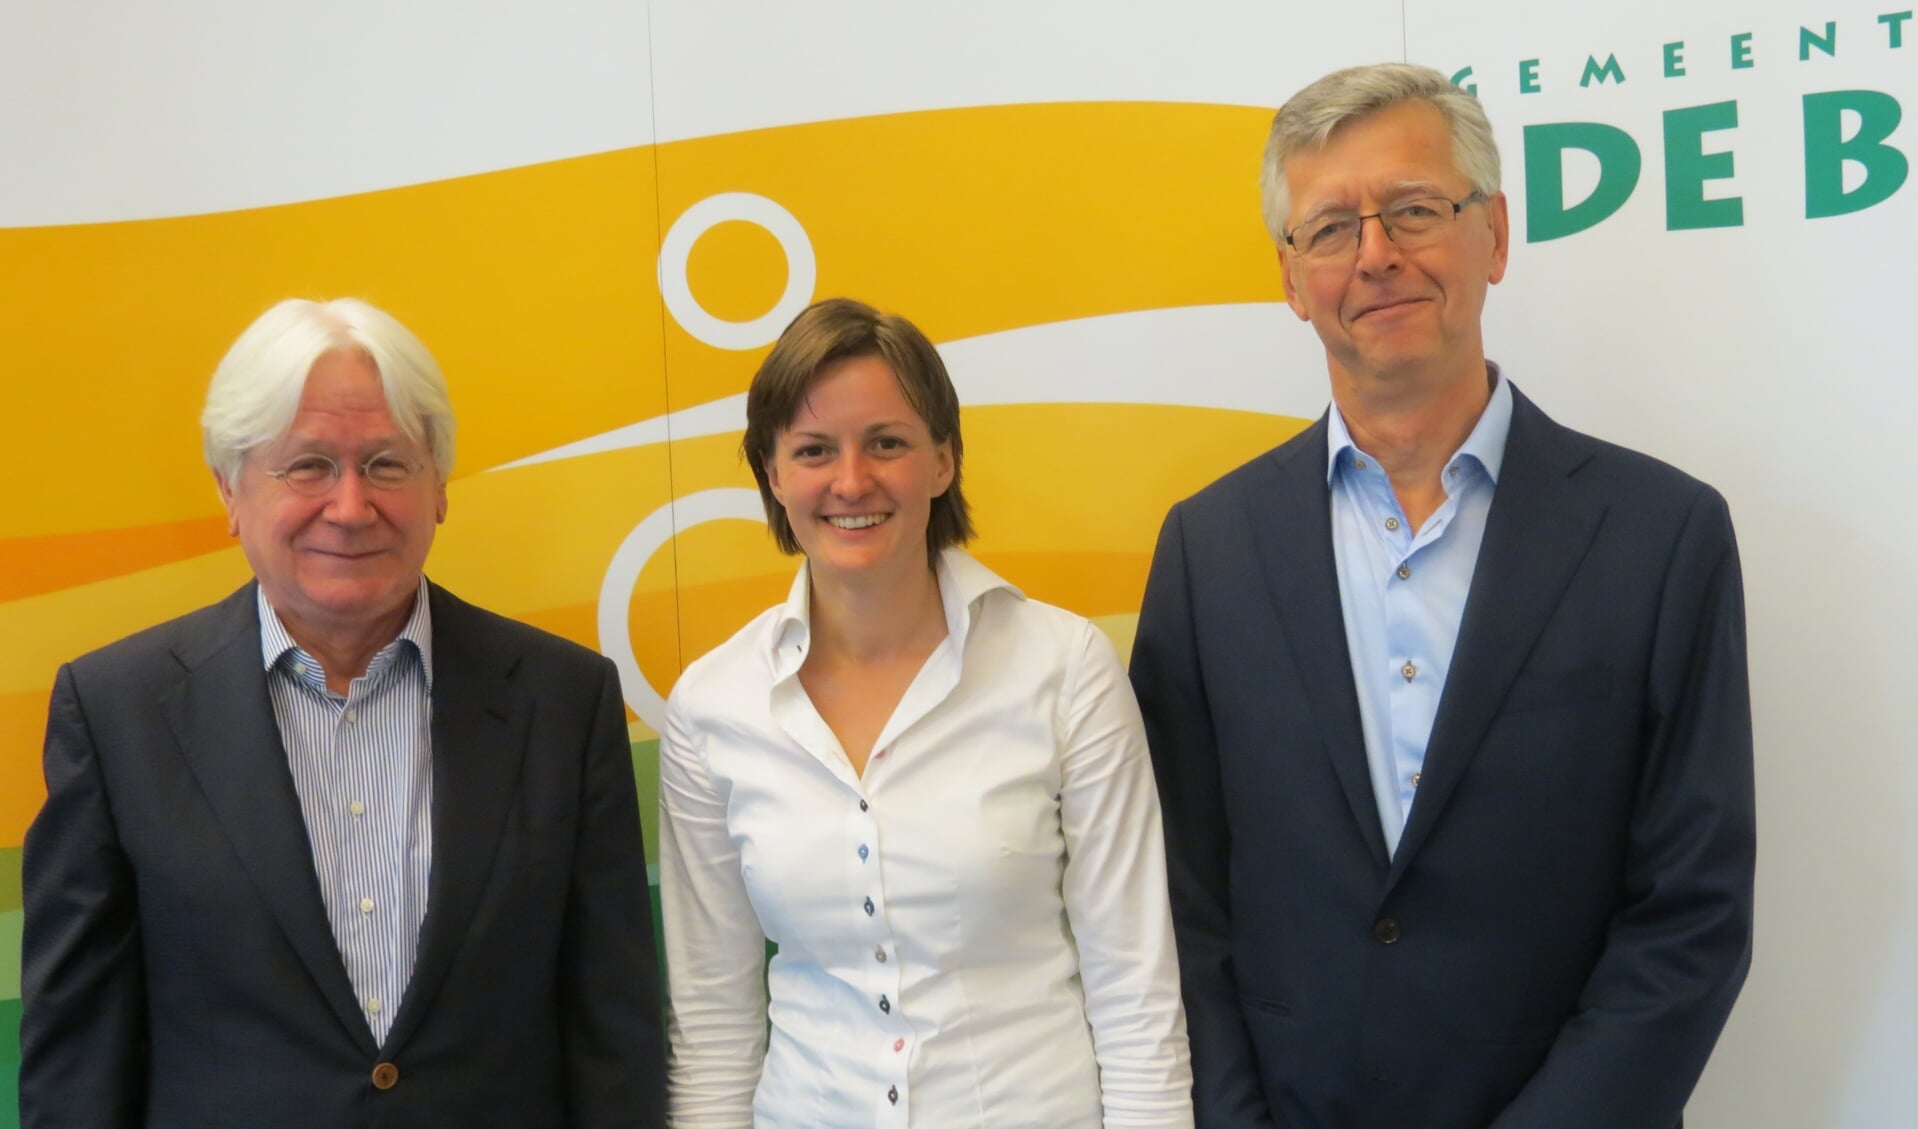 De nieuwbenoemde raadsleden Peter Weyers (GroenLinks), Margriet van de Vooren (CDA) en John van Brakel (D66).